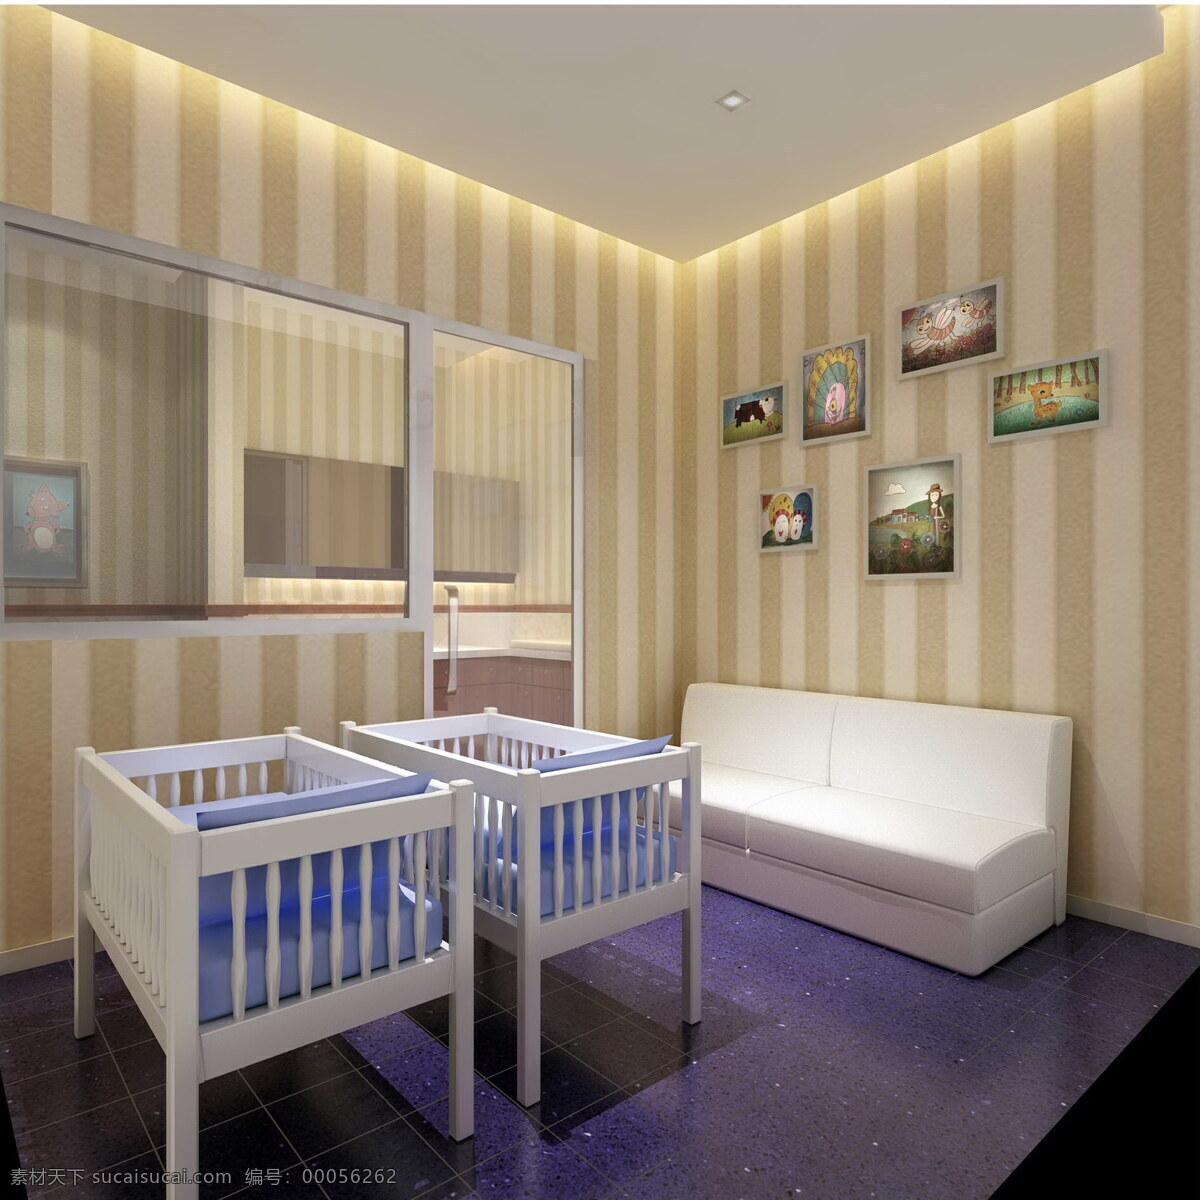 母婴 休息 间 环境设计 空间设计 商场 室内设计 室内效果图 母婴休息间 家居装饰素材